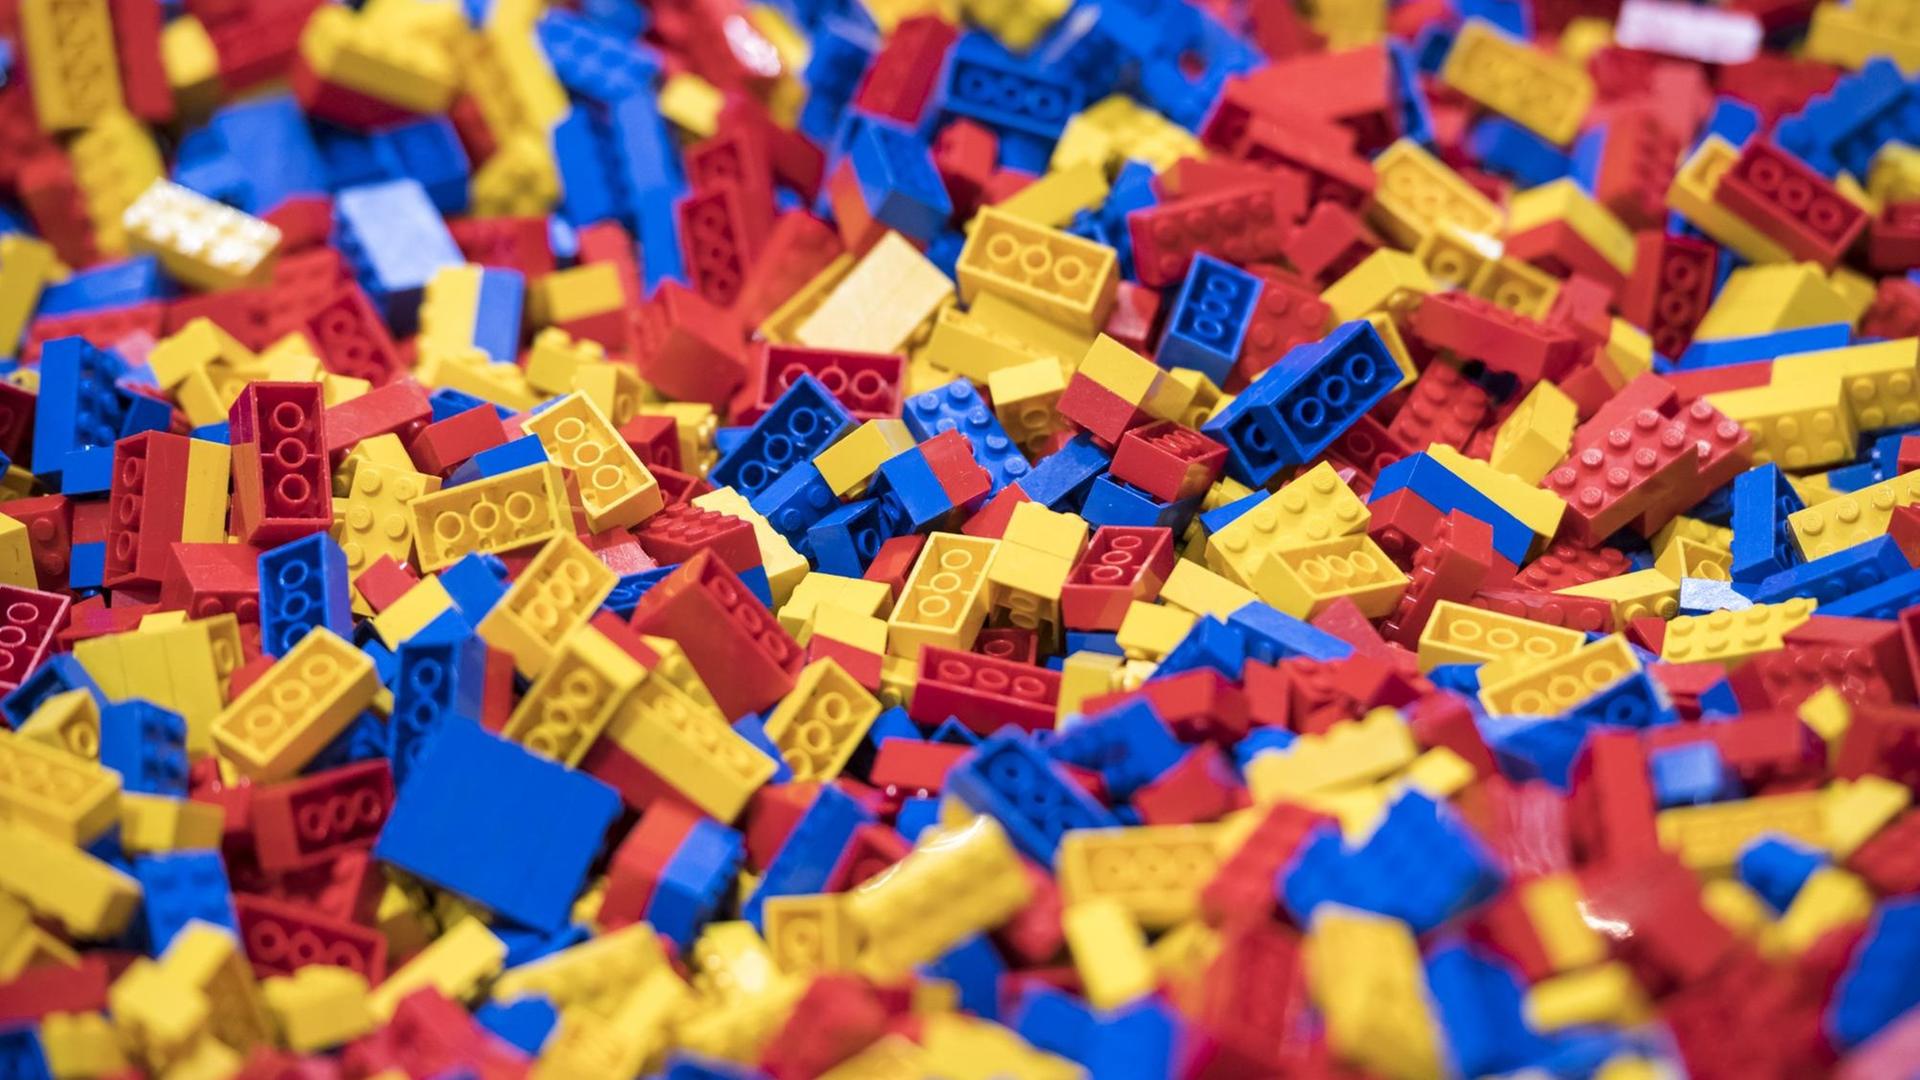 Tausende blaue, rote und gelbe Legosteine liegen durcheinander auf einer Fläche.